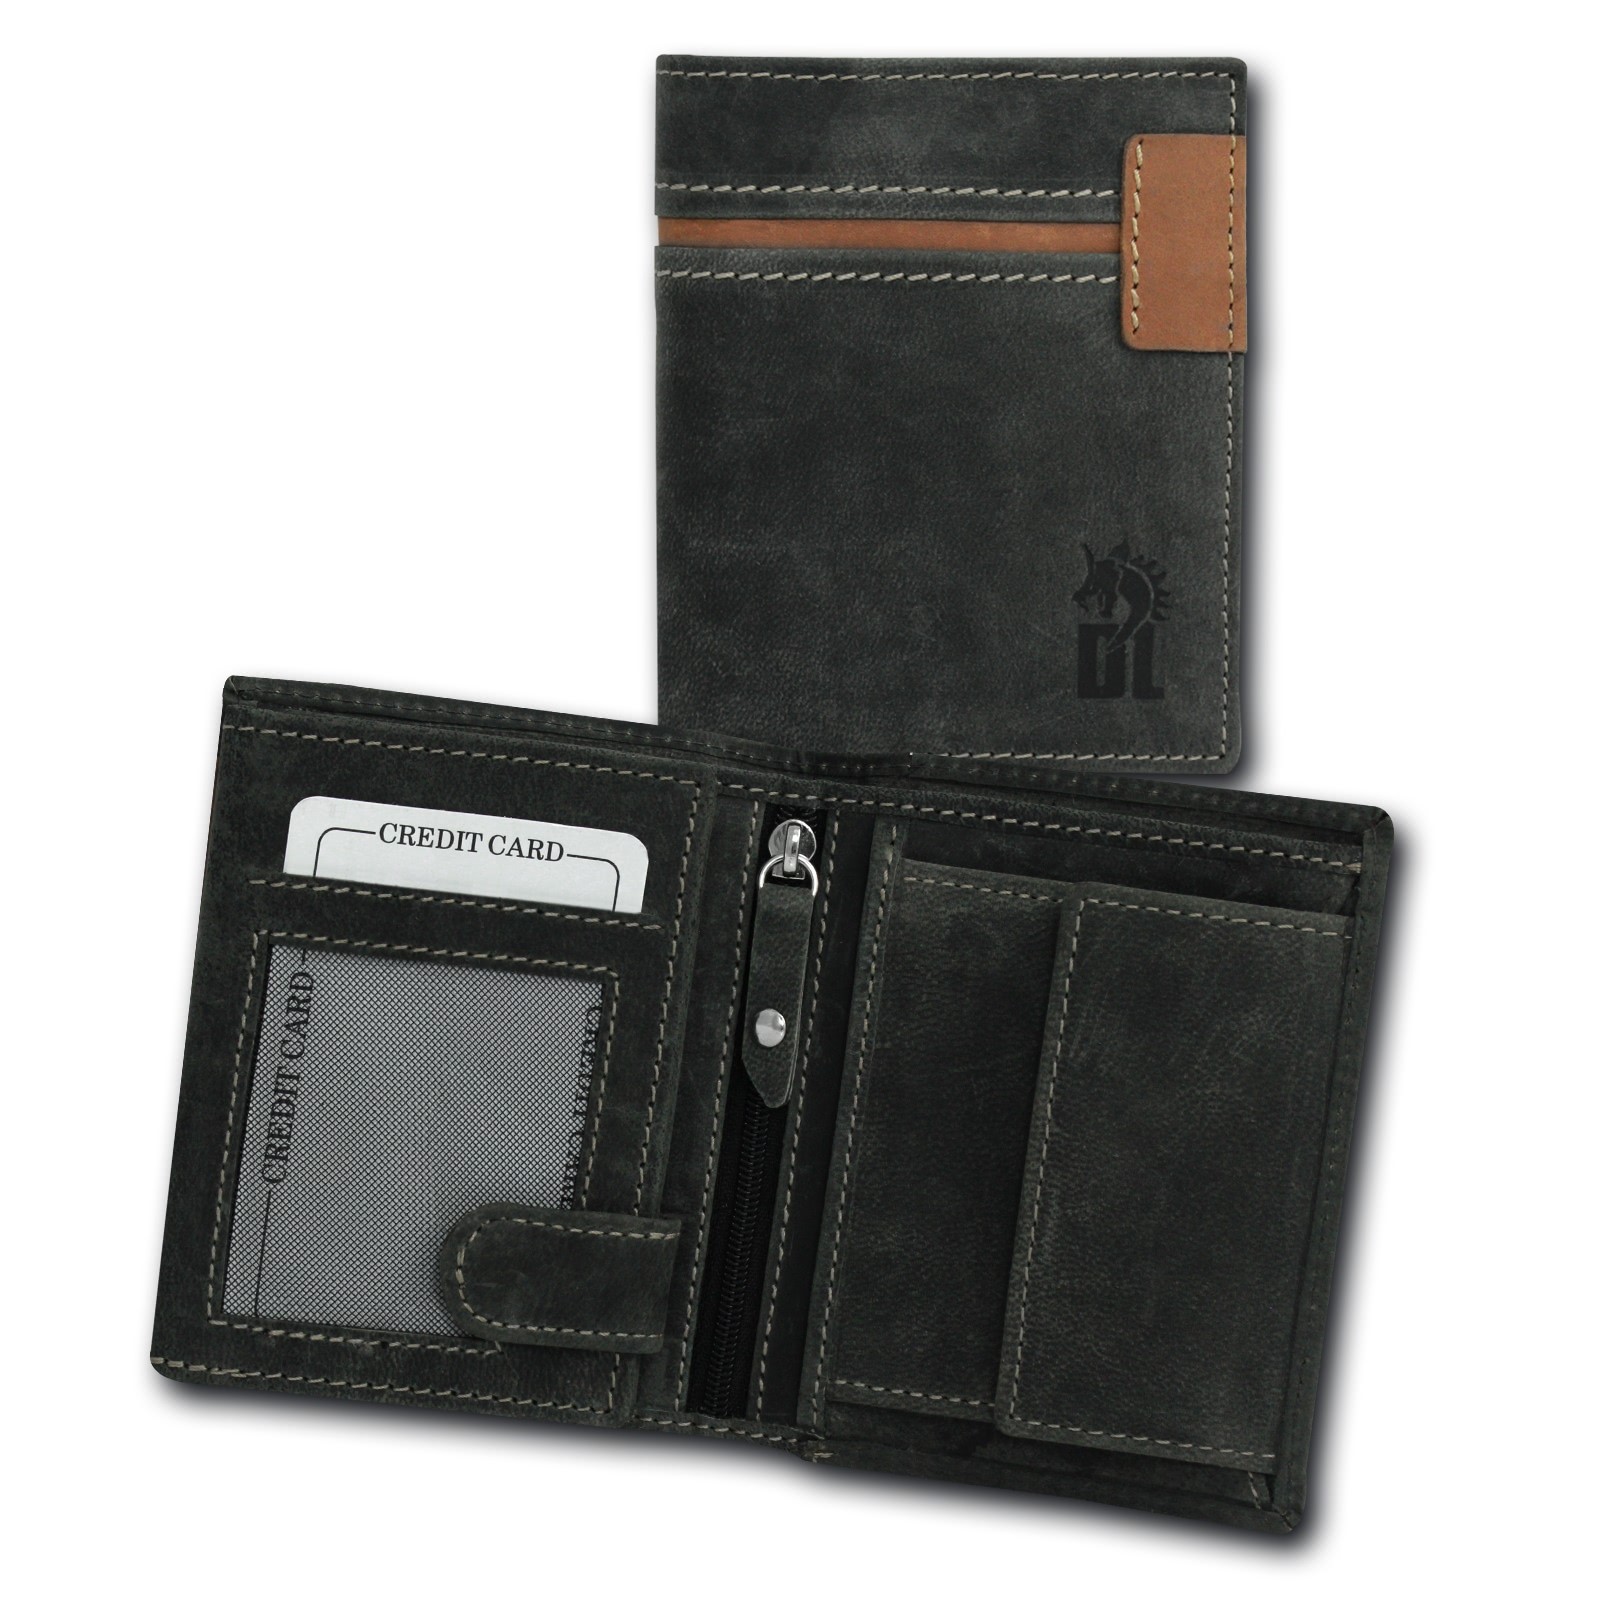 DrachenLeder Vintage Geldbörse grau, braun Echtleder Portemonnaie Brieftasche Herren OPT082K